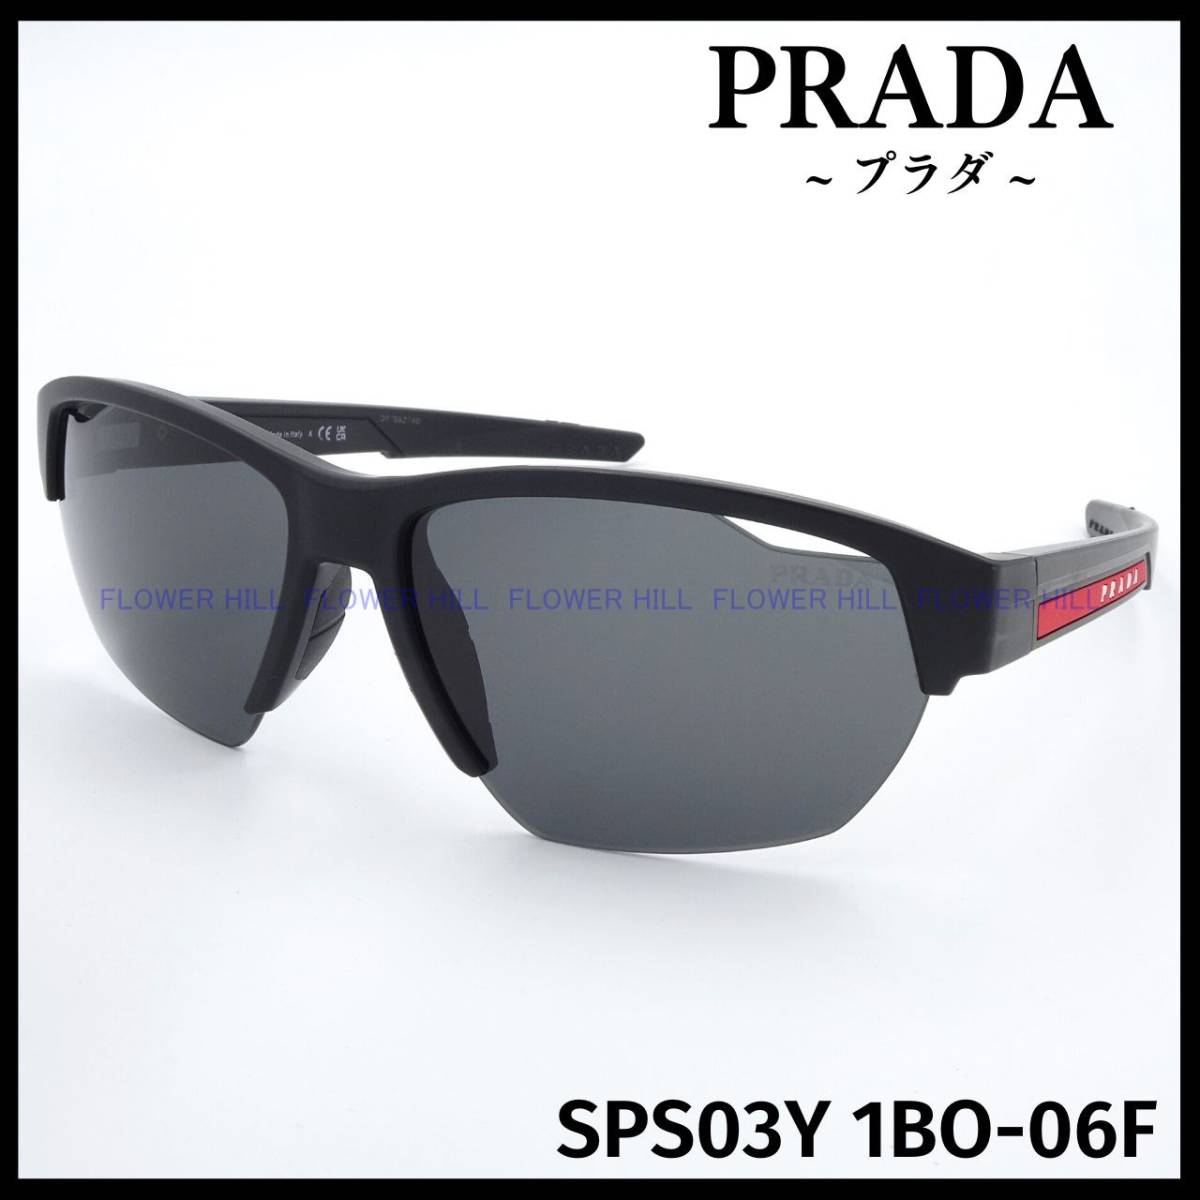 【新品・送料無料】プラダ PRADA SPORT サングラス SPS03Y 1BO-06F マットブラック イタリア製 メンズ レディース